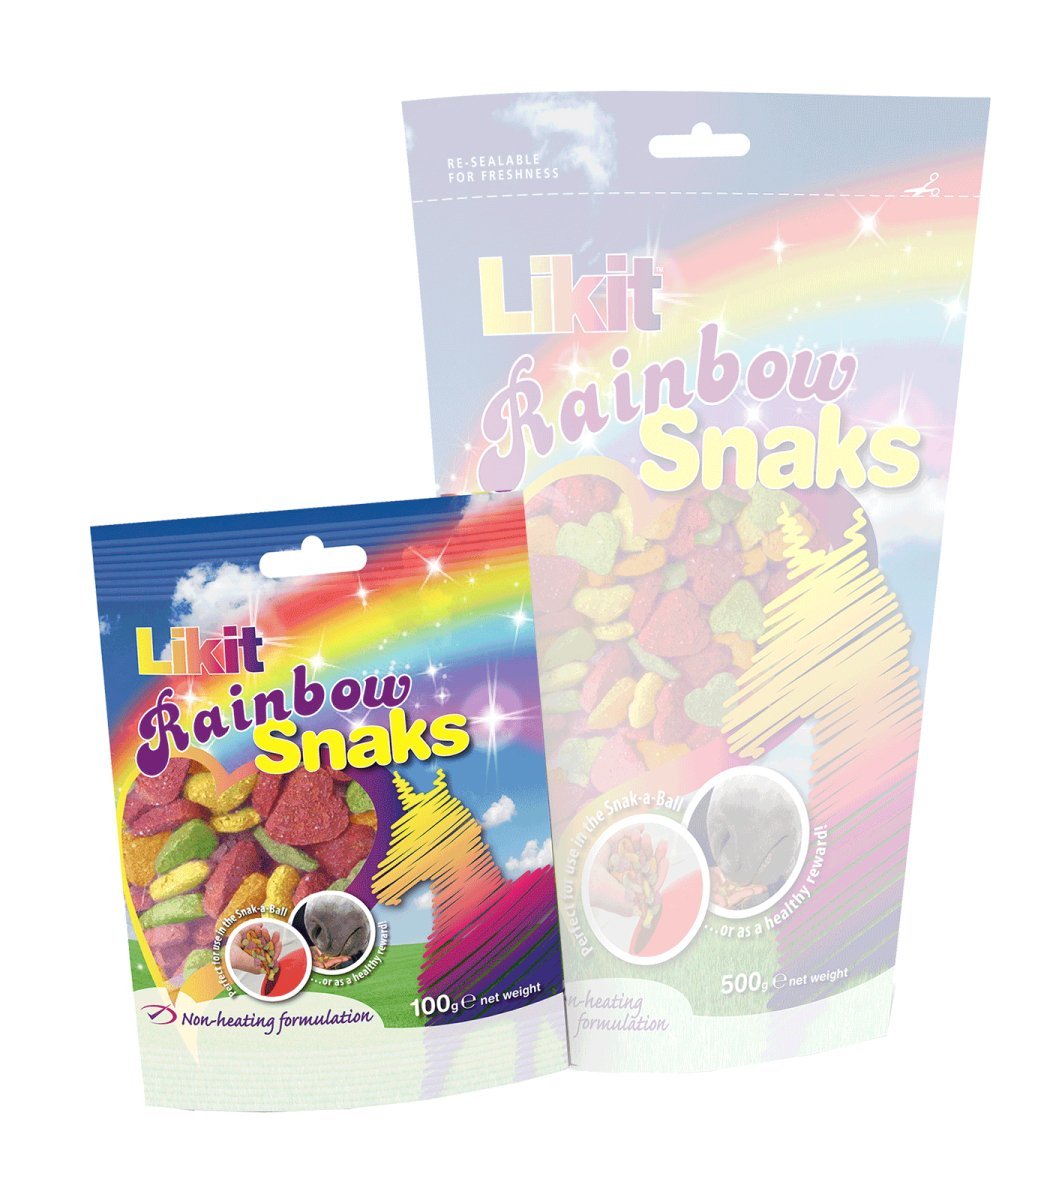 Likit Rainbow Snacks - DATOVARE - animondo.dk - DATOVARE - 1560499